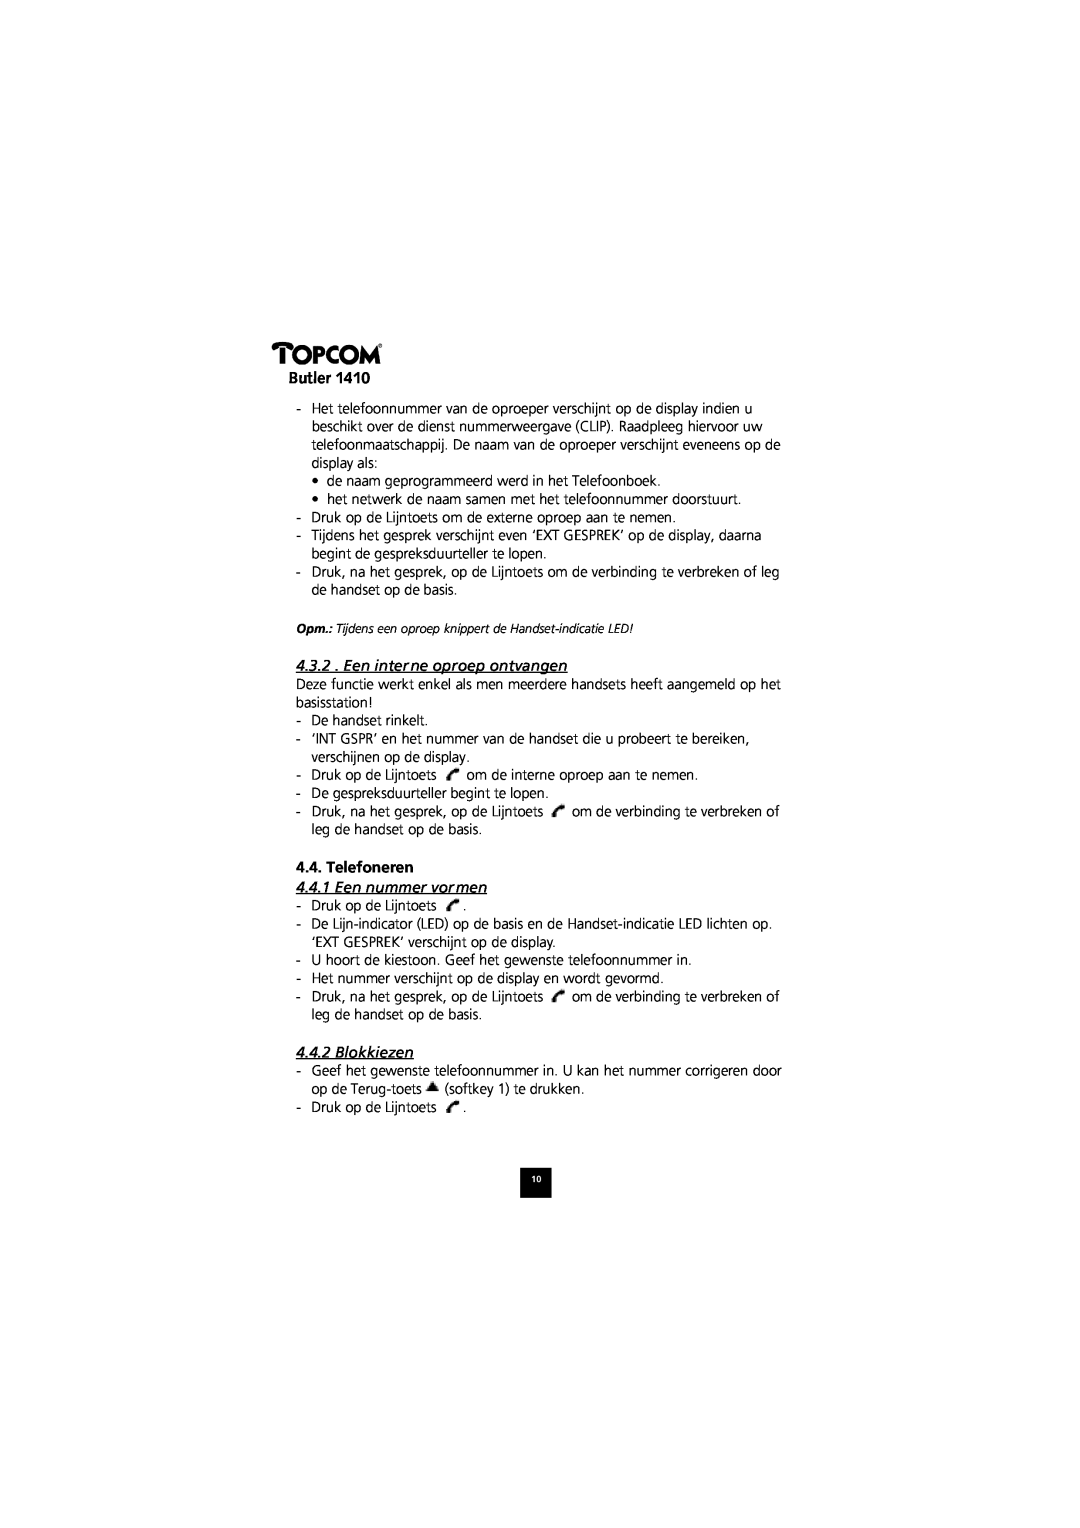 Topcom 1410 manual Een interne oproep ontvangen, Telefoneren, Een nummer vormen, Blokkiezen, Butler 